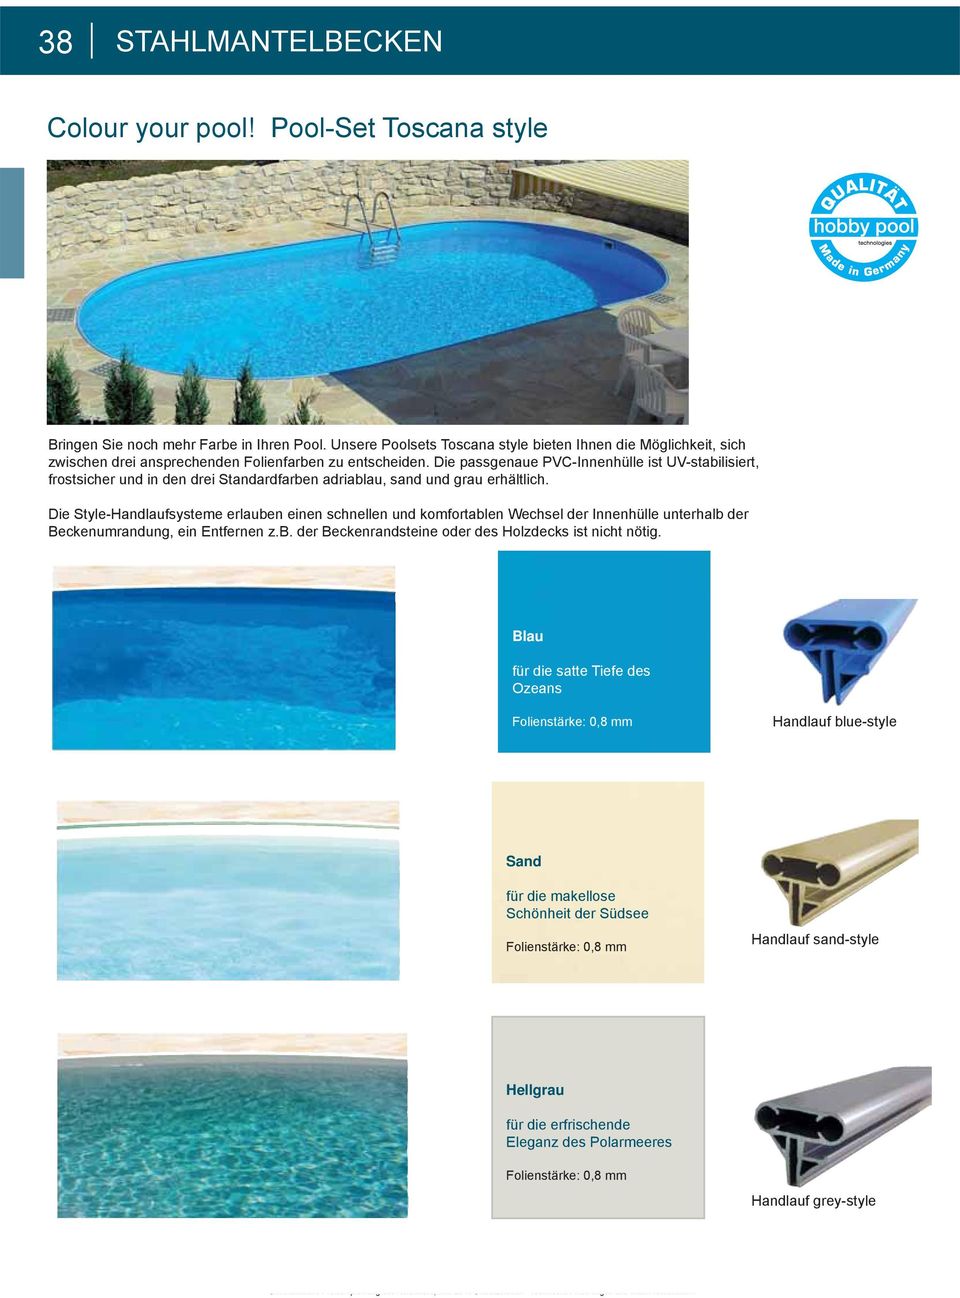 Die passgenaue PVC-Innenhülle ist UV-stabilisiert, frostsicher und in den drei Standardfarben adriablau, sand und grau erhältlich.